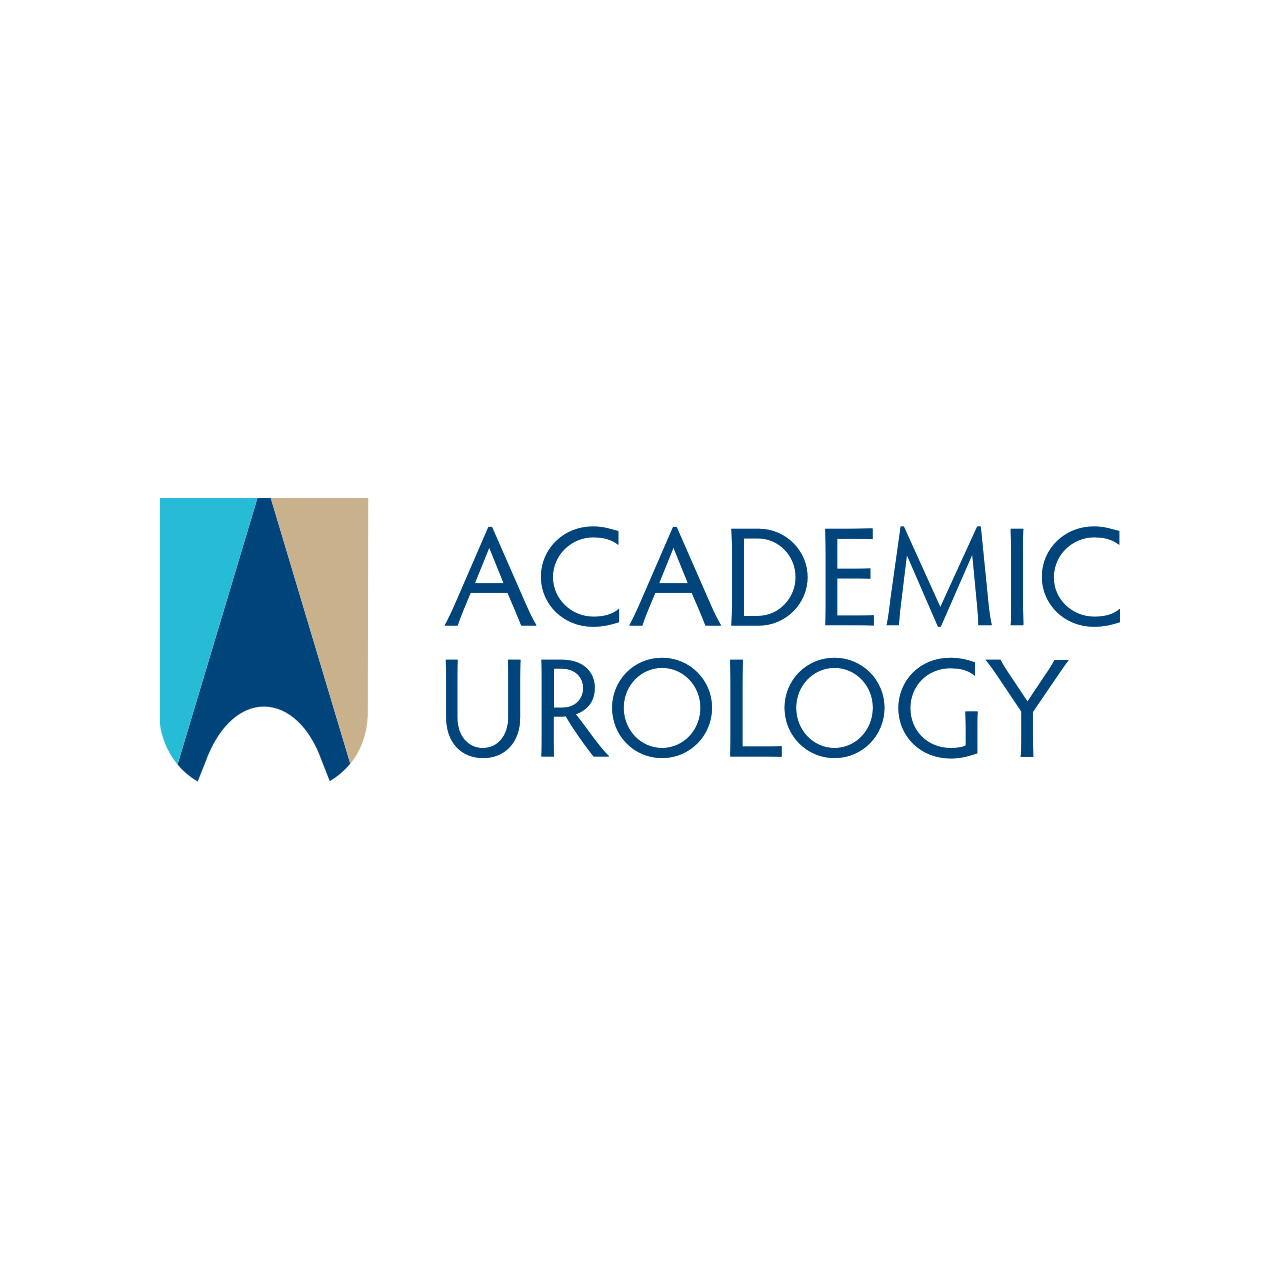 Academic Urology